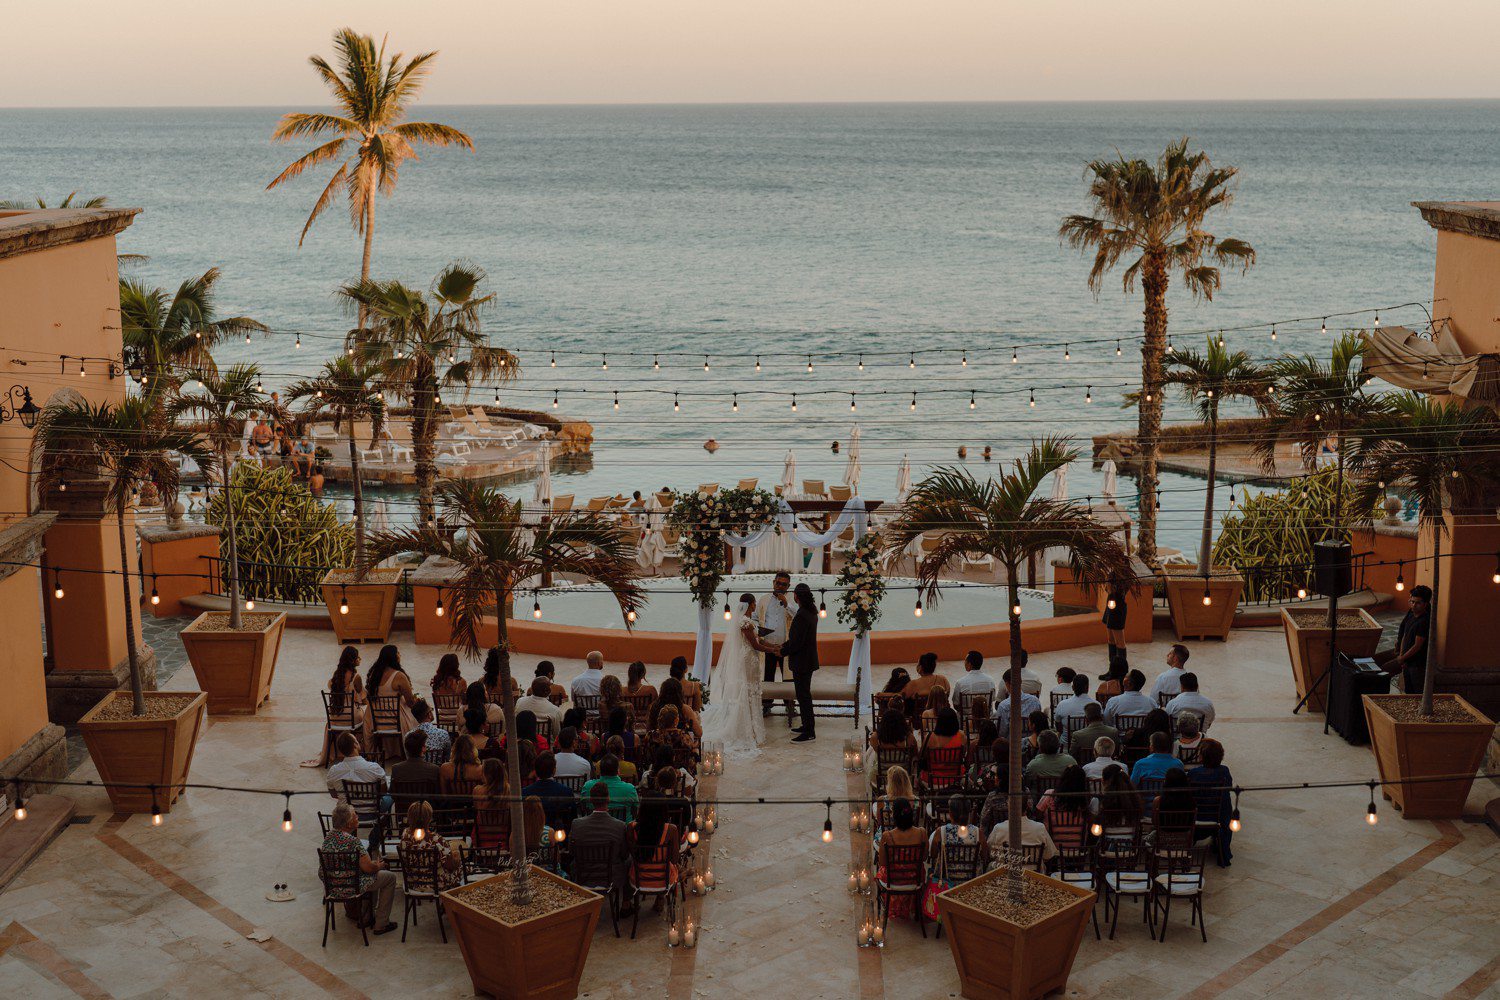 Beach wedding ceremony at Hacienda Del Mar in Los Cabos, Mexico.